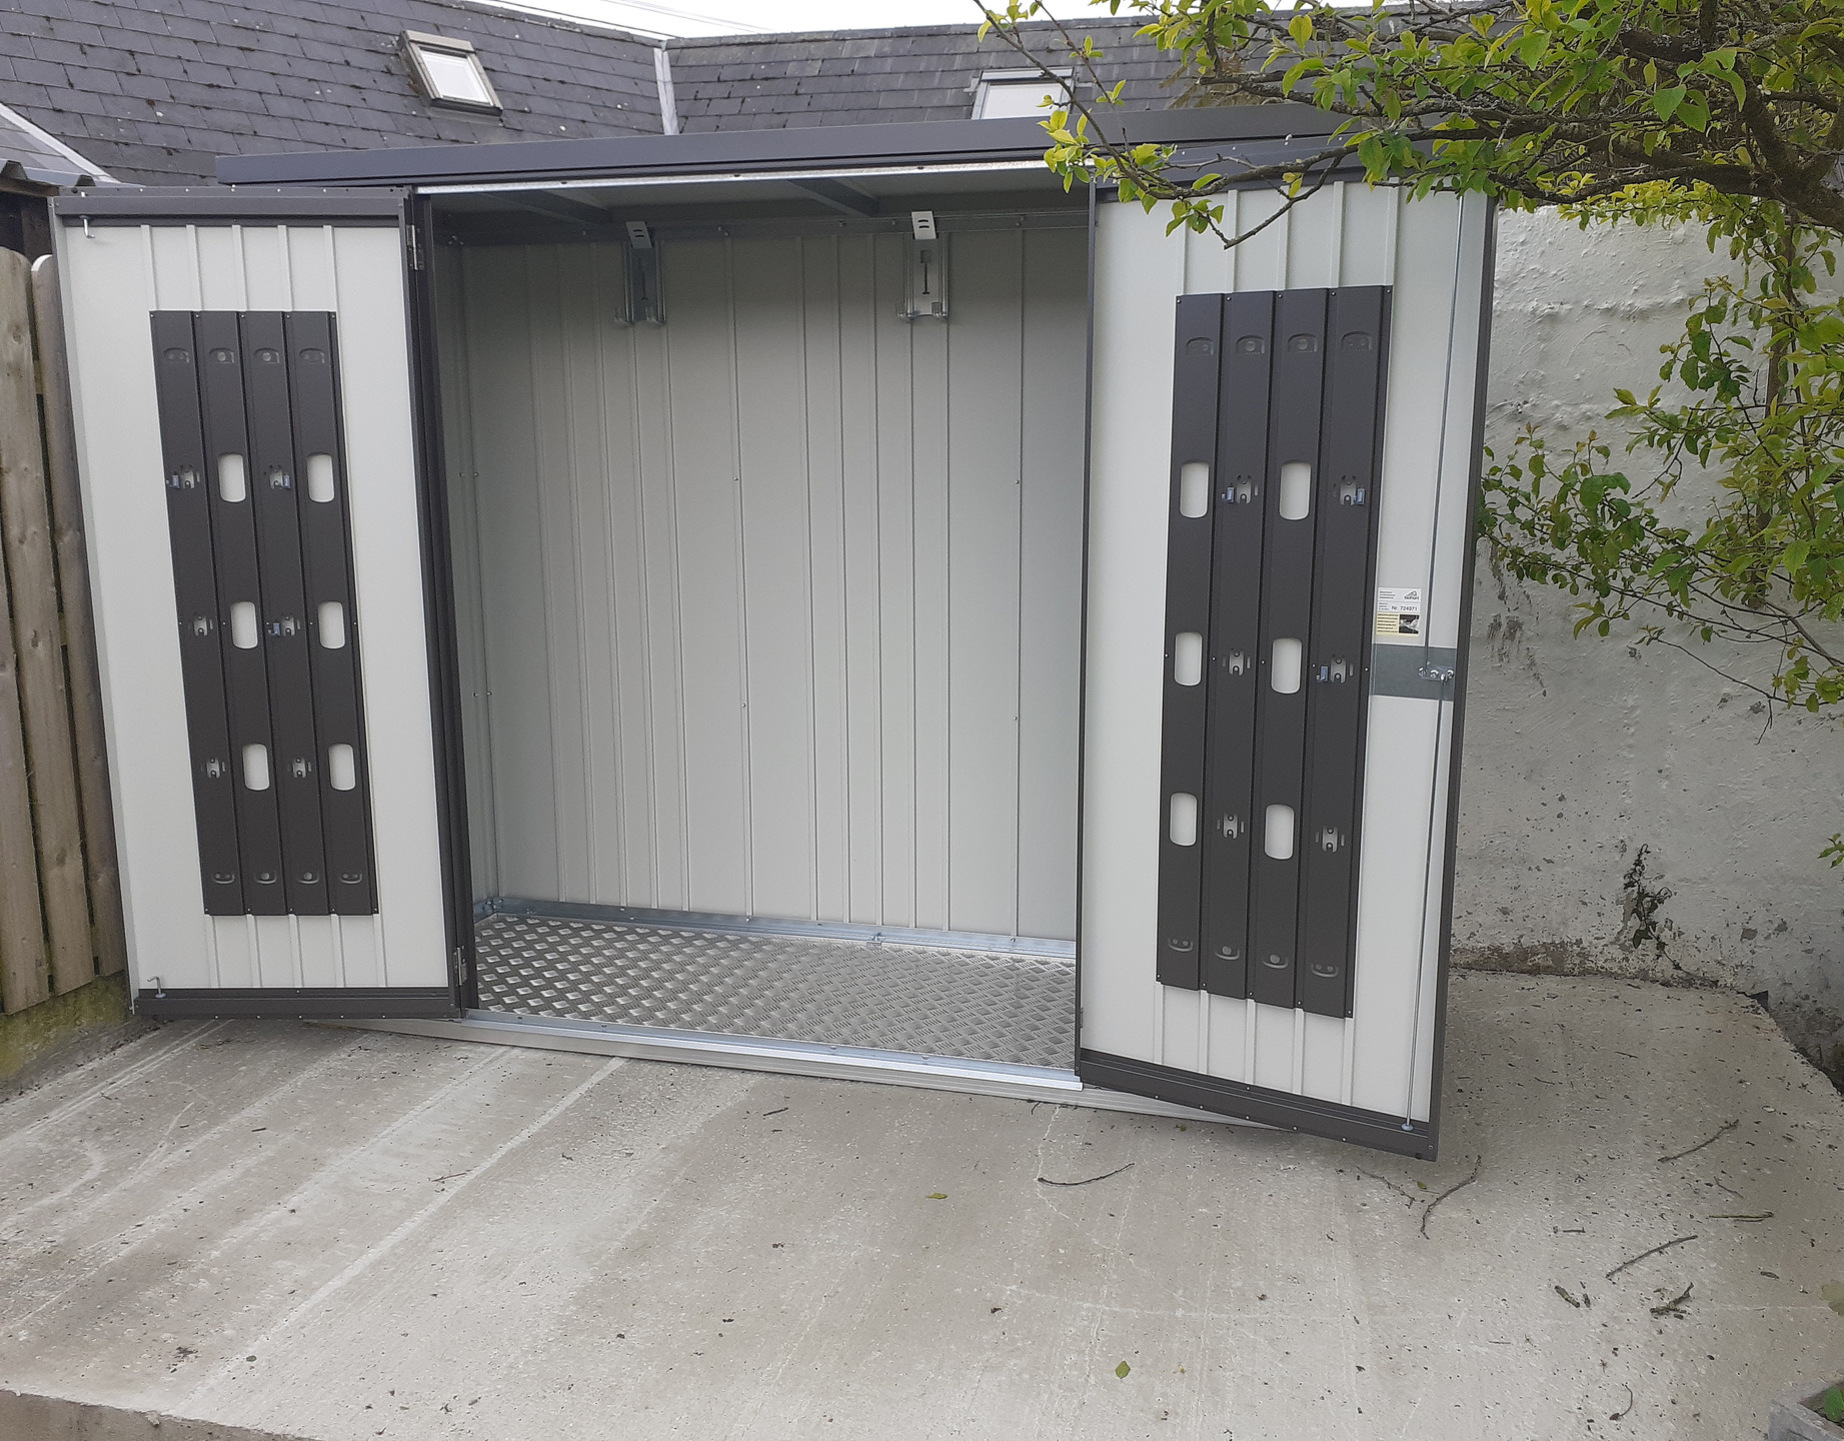 Biohort Equipment Locker 230 in metallic dark grey, supplied + fitted in Limerick  | Stylish, Versatile, Secure & Rainproof Garden Storage Solution